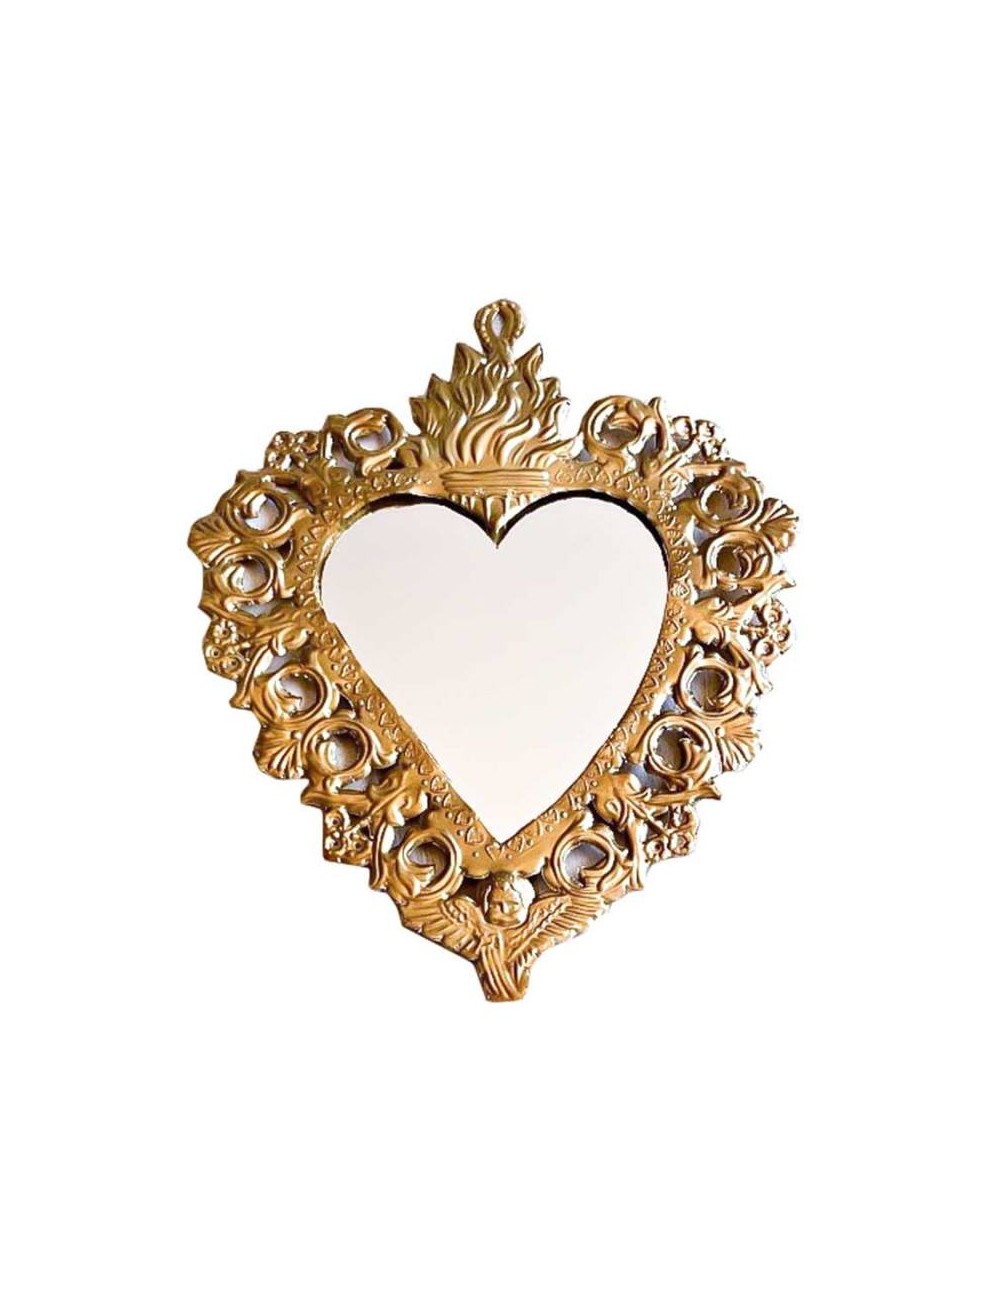 Le collier en forme de miroir (pas d'effet miroir) en plaqué or